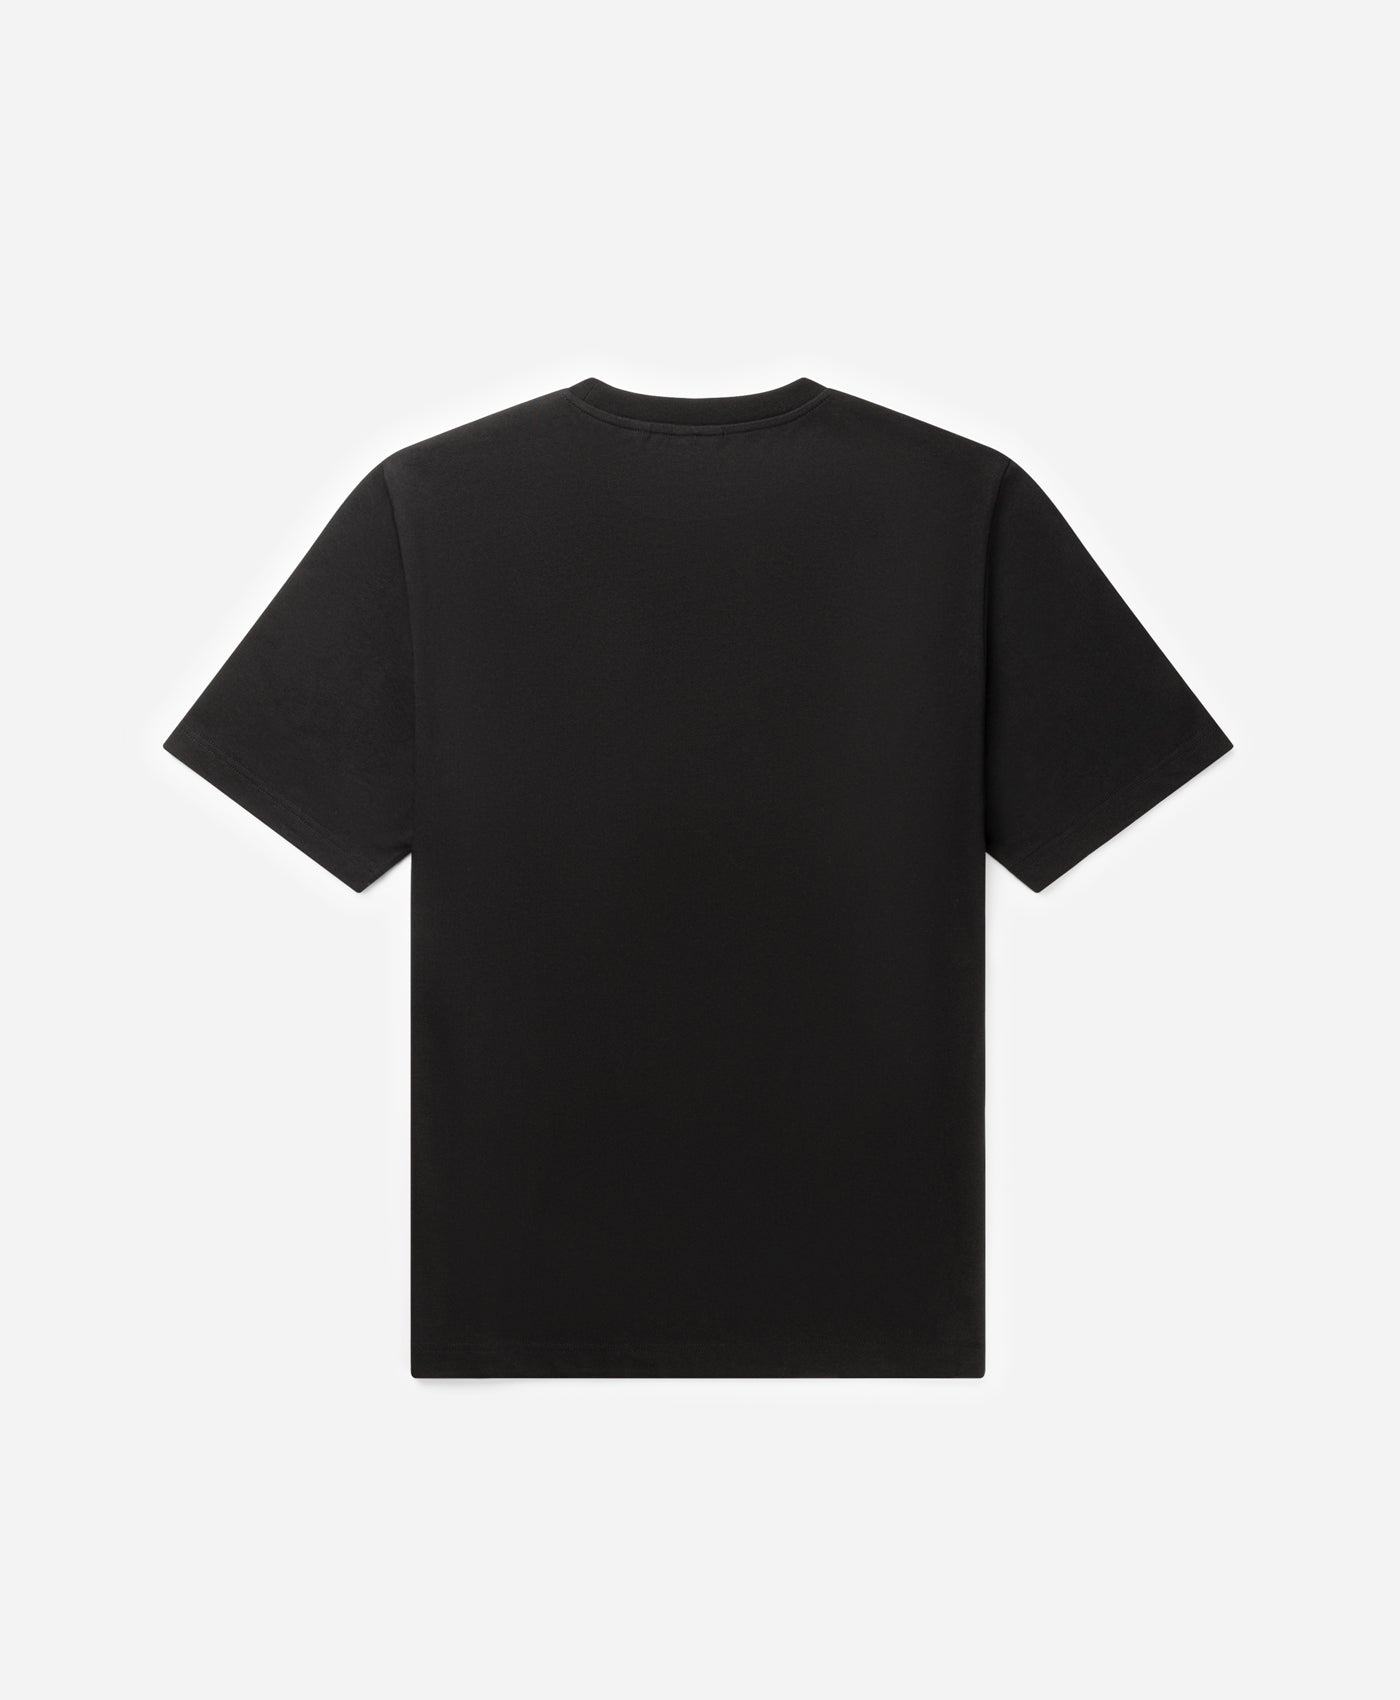 DP - Black Unified Type T-Shirt - Packshot - Rear